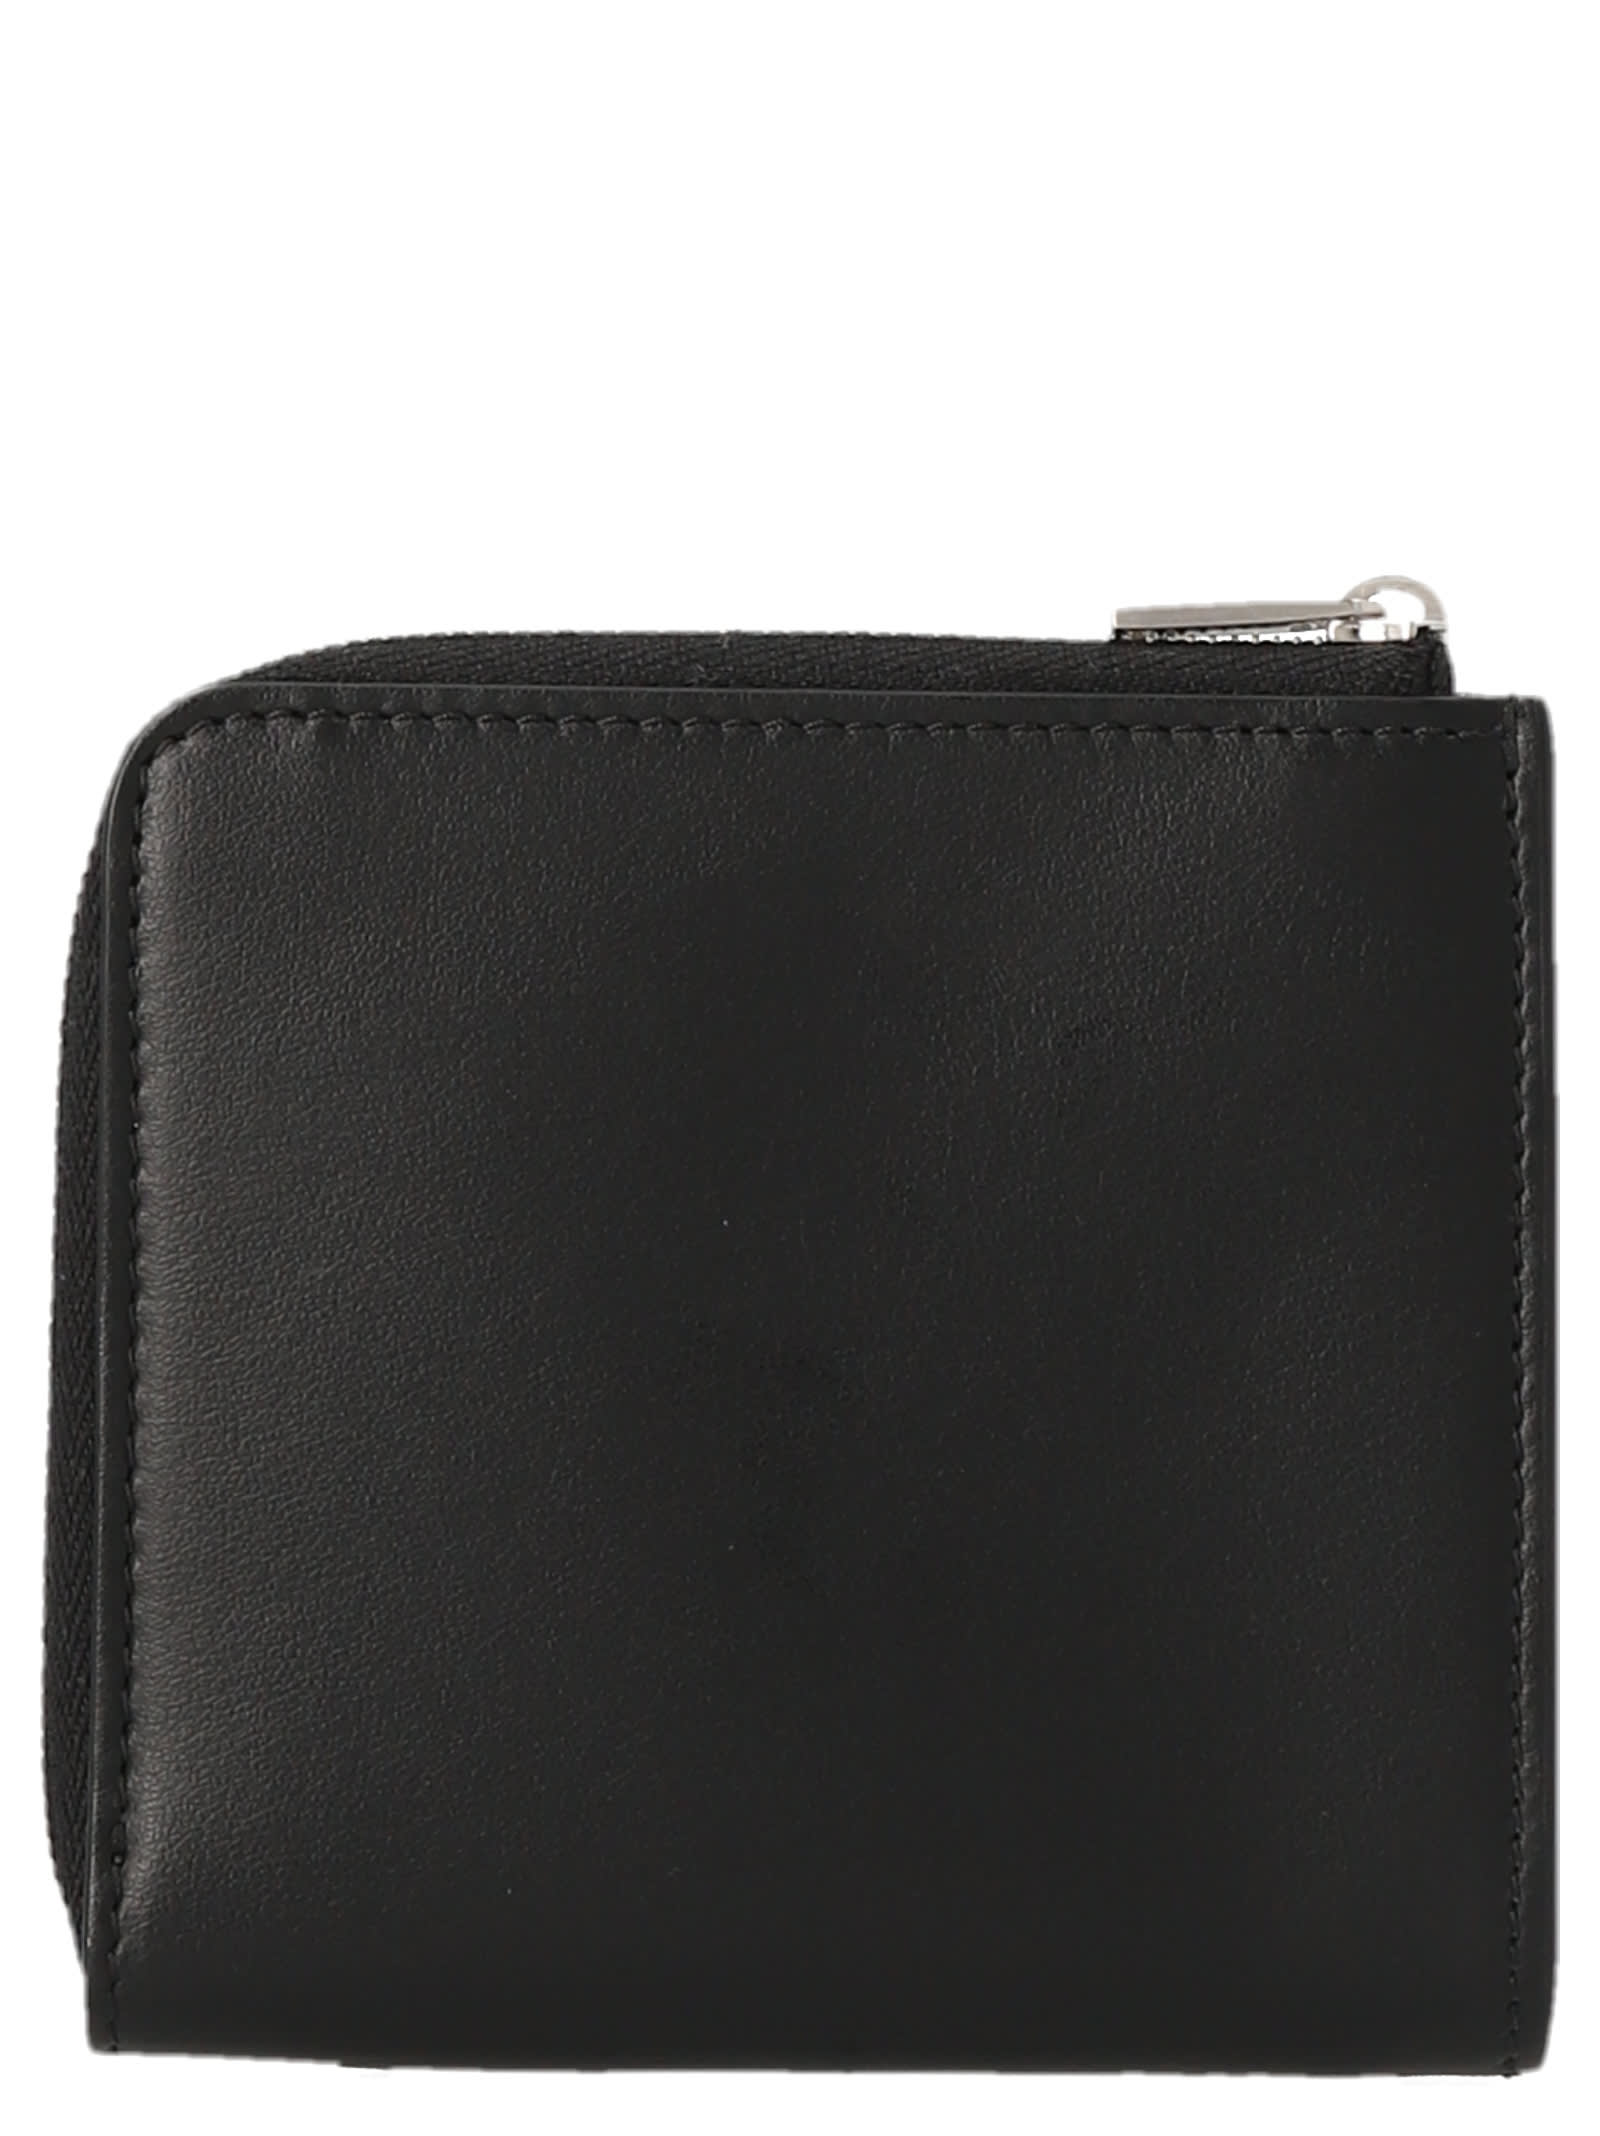 Shop Jil Sander Leather Wallet